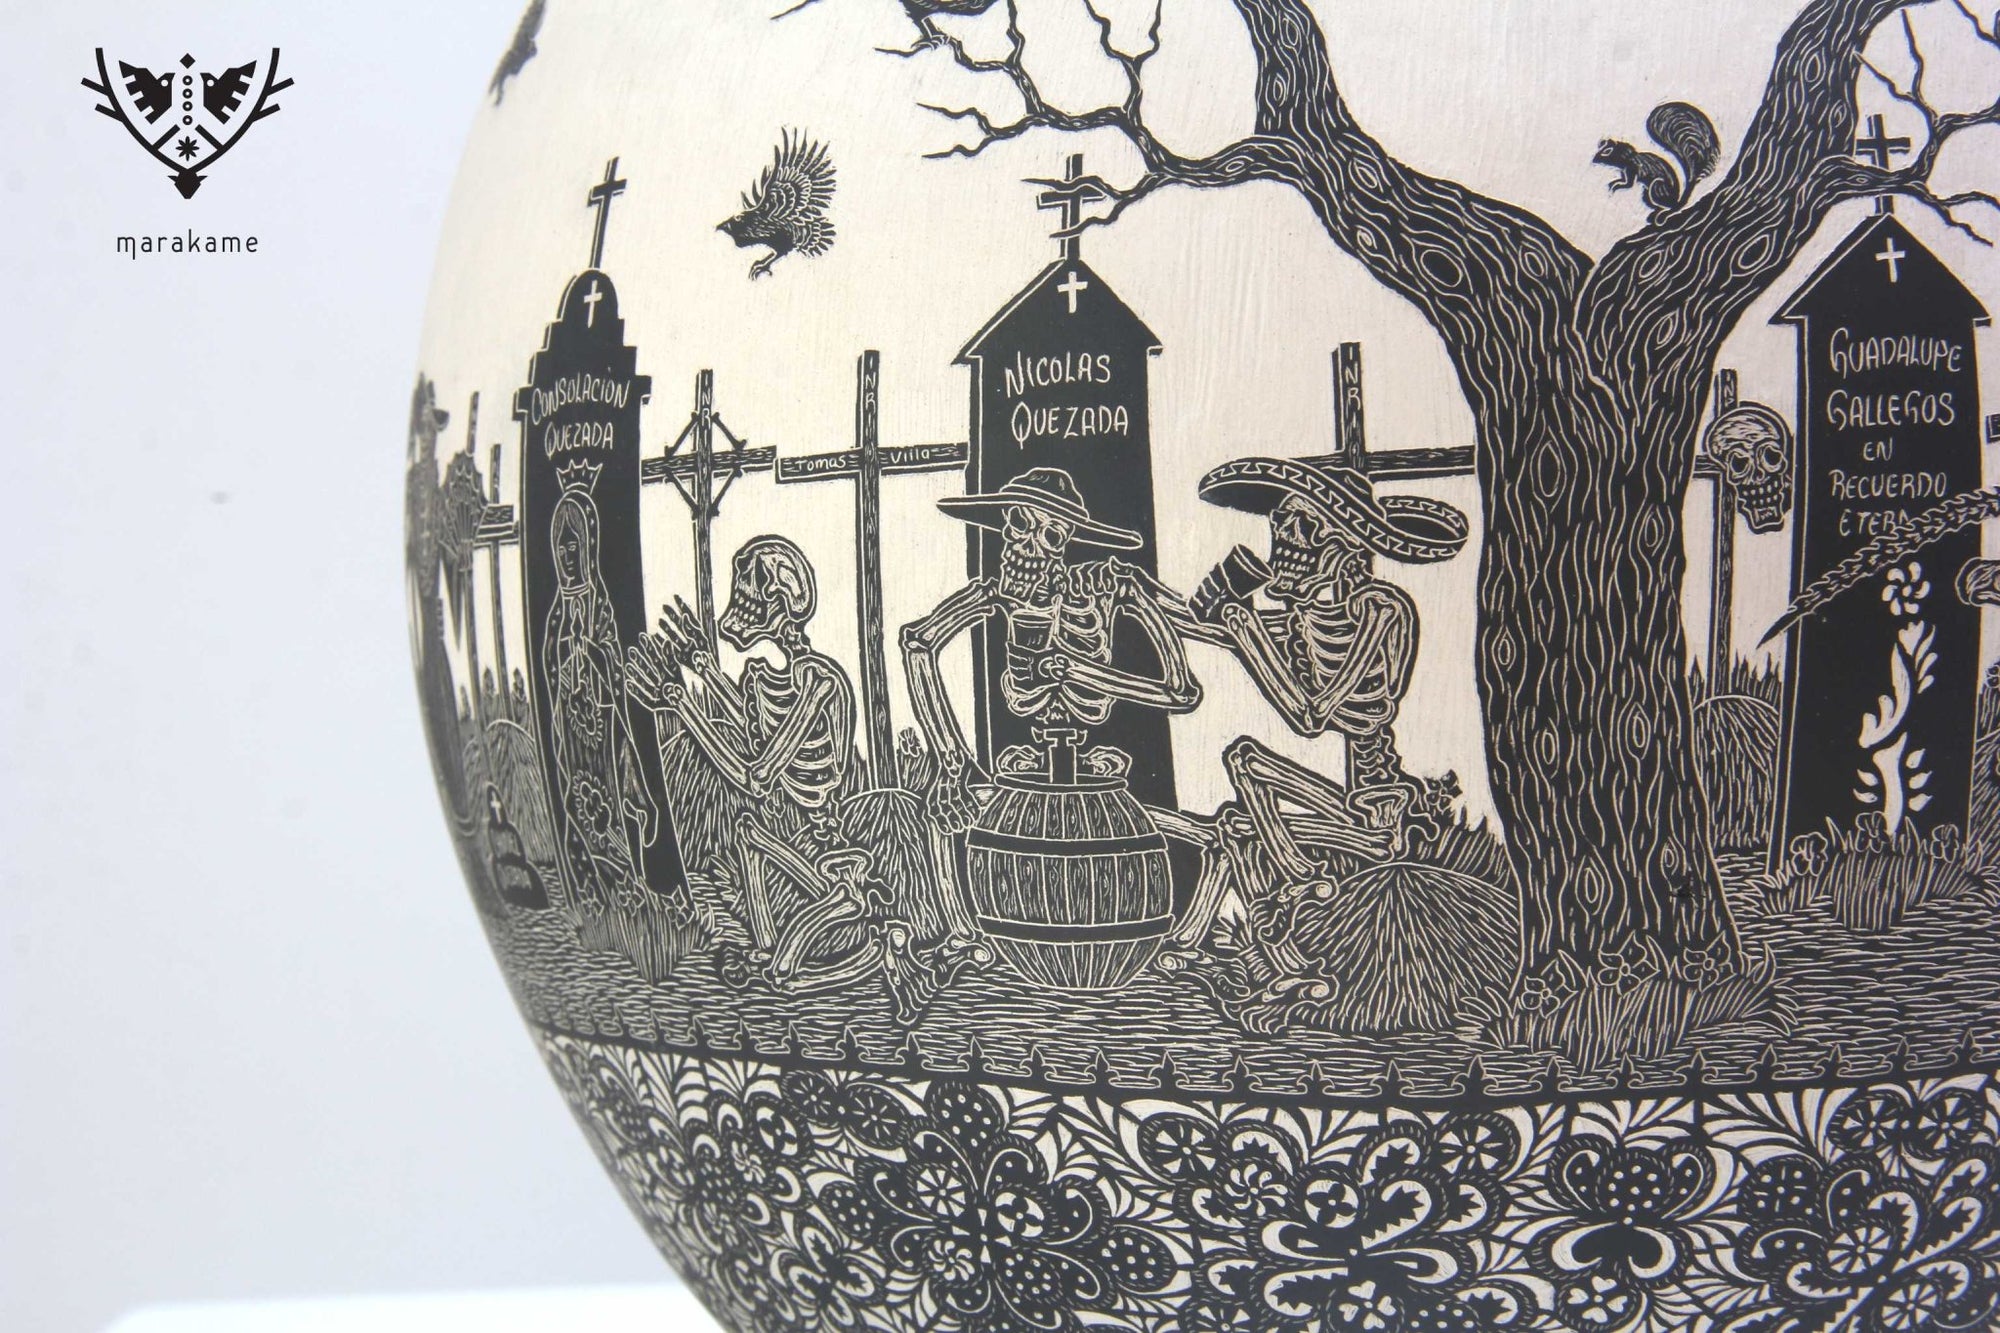 Mata Ortiz Keramik – Tag der Toten, der Rhythmus der Rebellen – Meisterwerk – Huichol-Kunst – Marakame